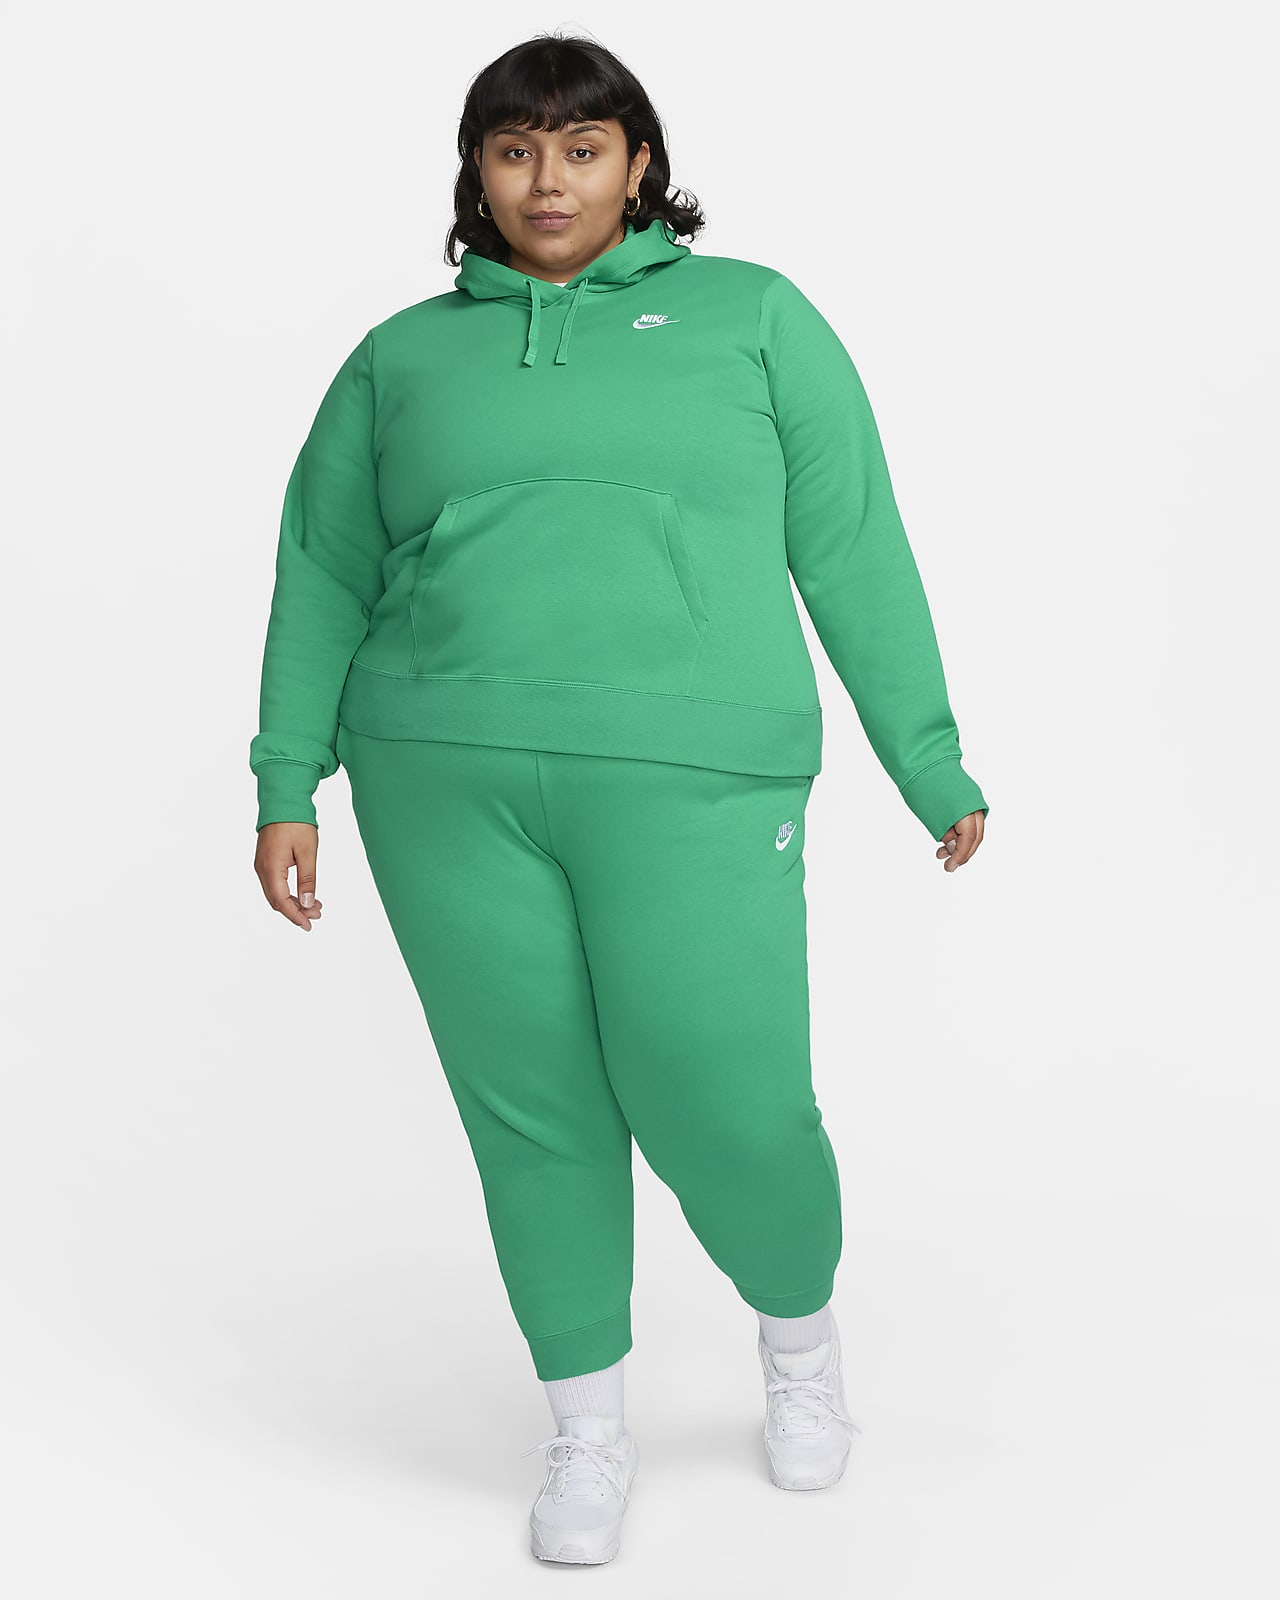 Nike Womens Sportswear Essential Fleece Pullover Hoodie (Plus Size) Black 2X